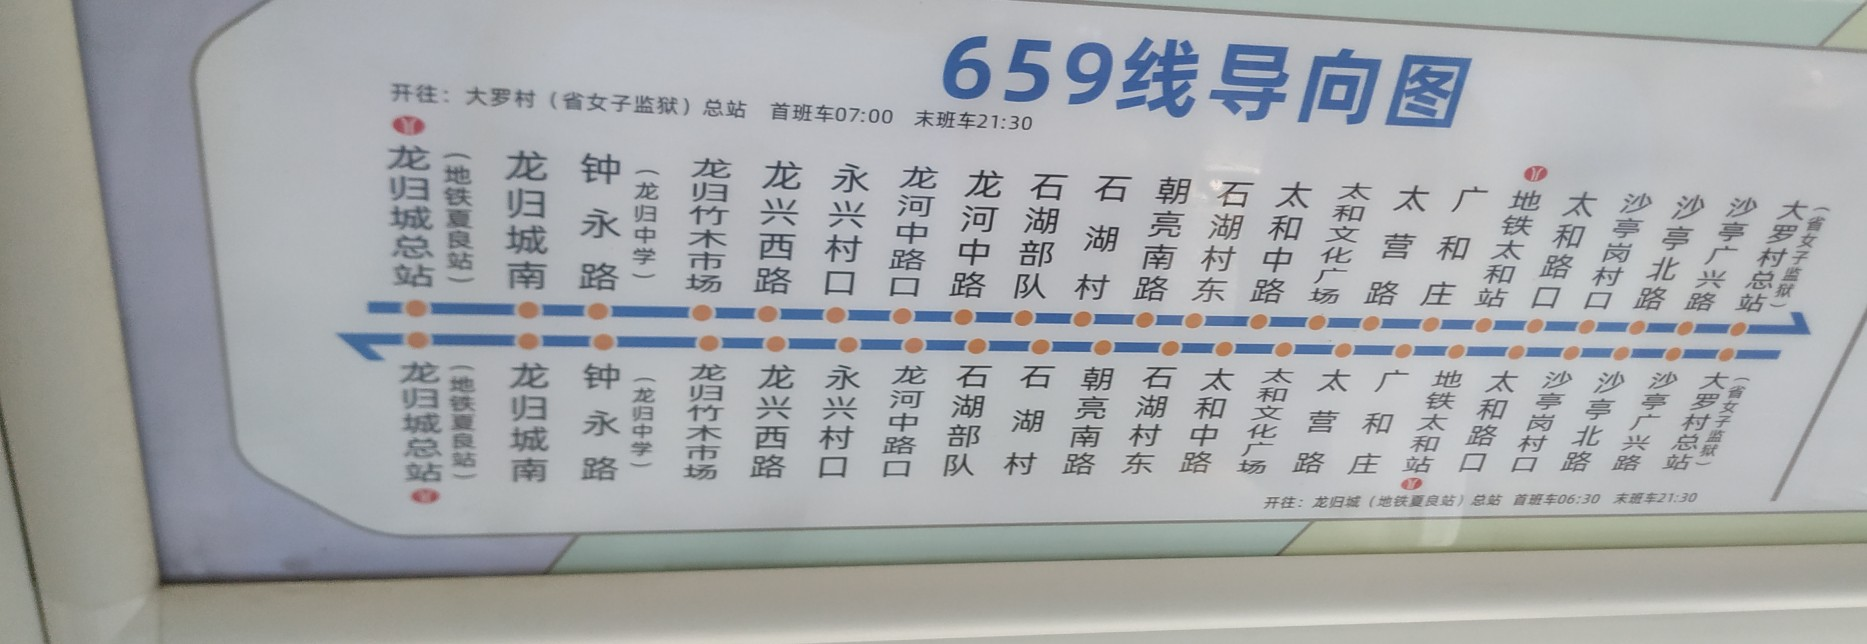 广州659路公交车路线